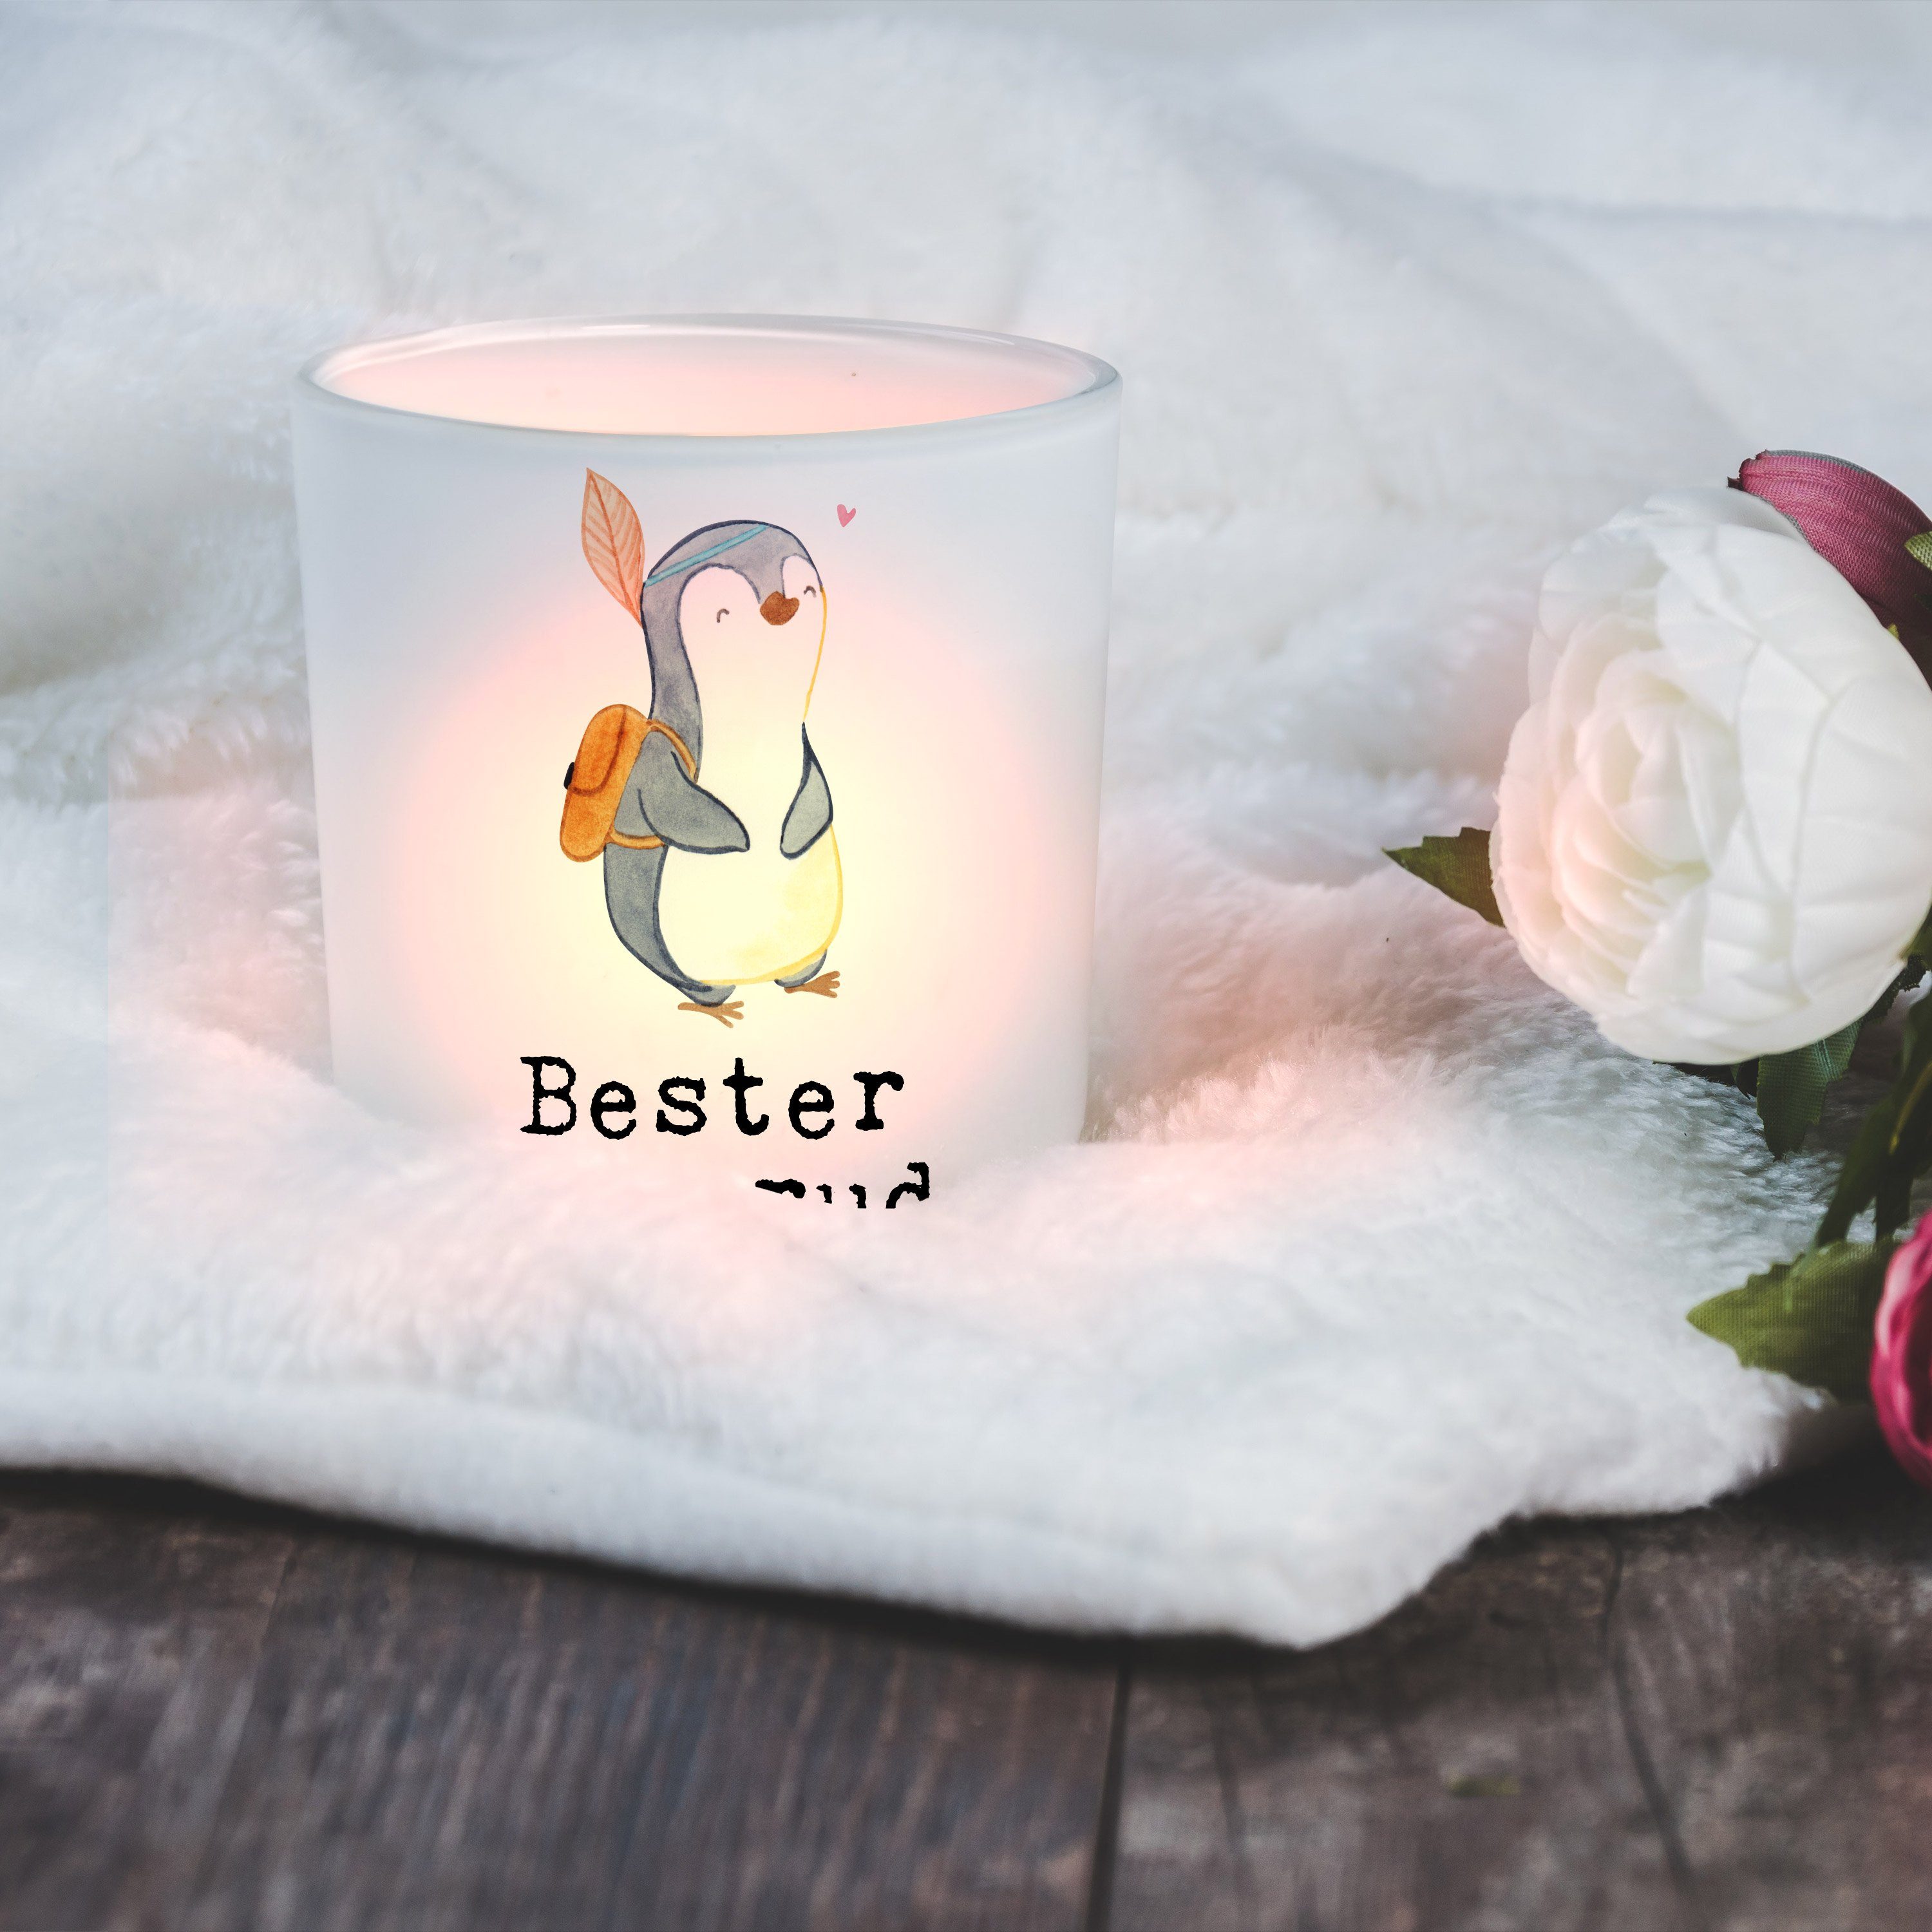 Mr. & Mrs. (1 - Kerzeng der Welt - Transparent Pinguin Blutsbruder St) Geschenk, Panda Bester Windlicht